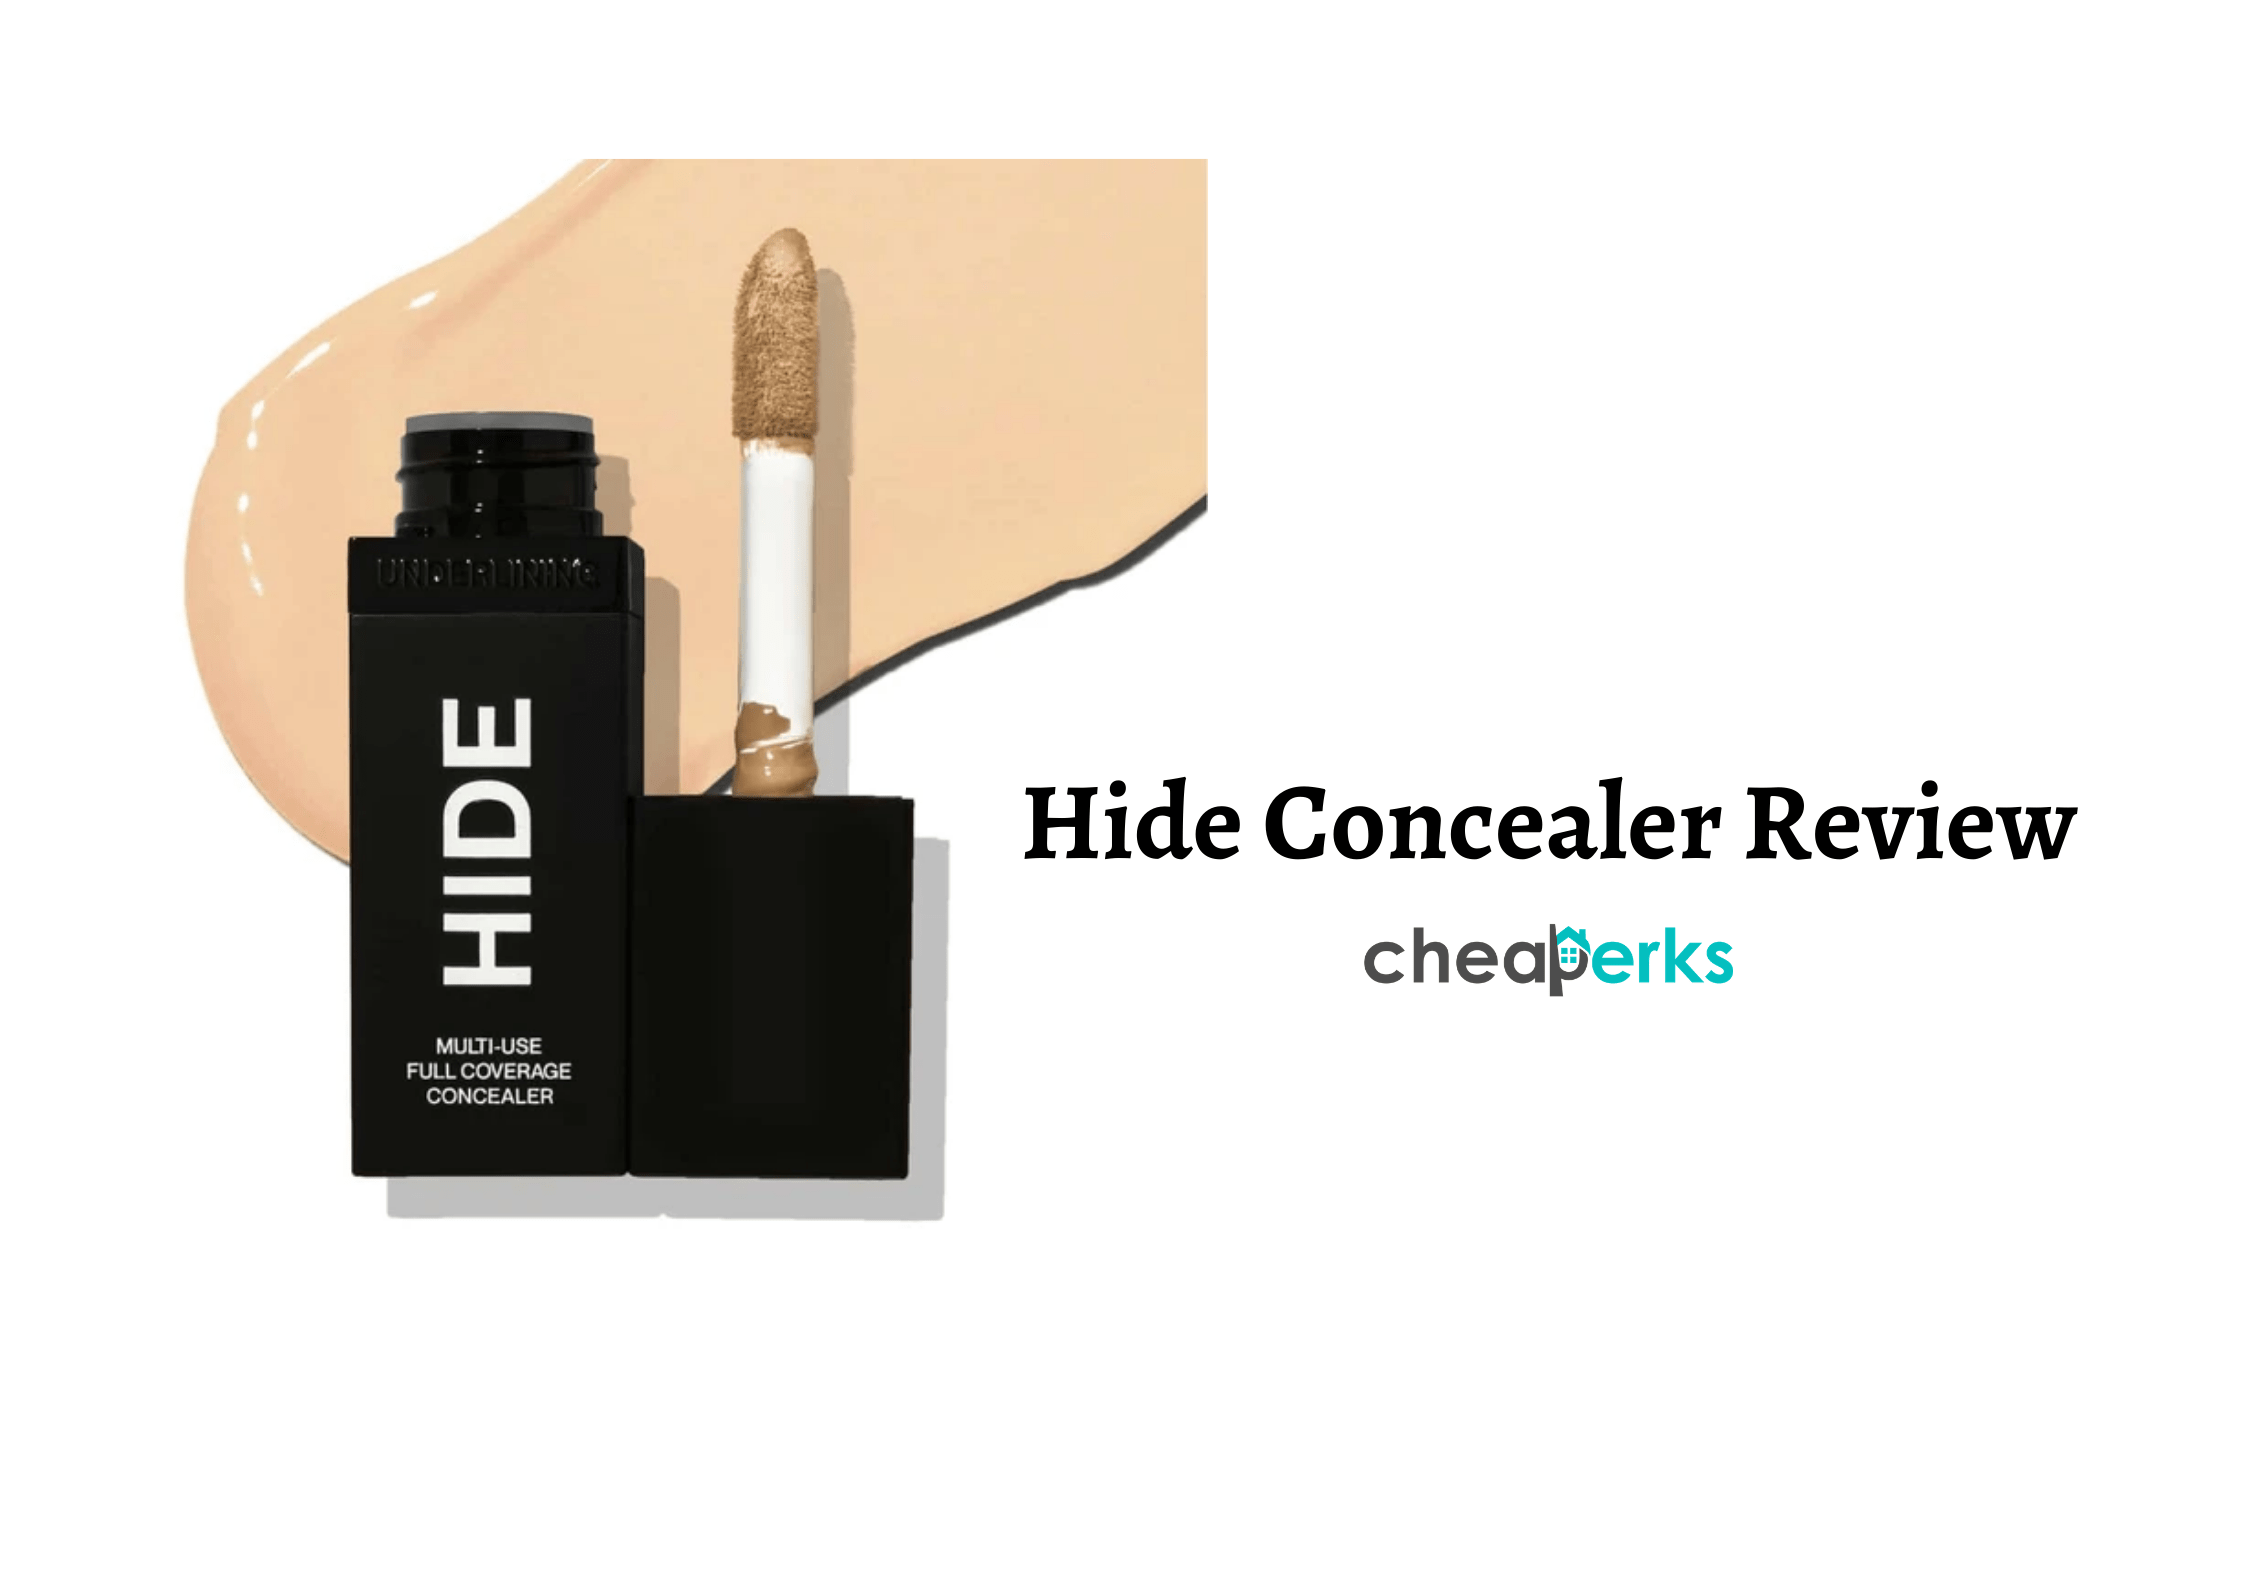 hider 2 vs concealer